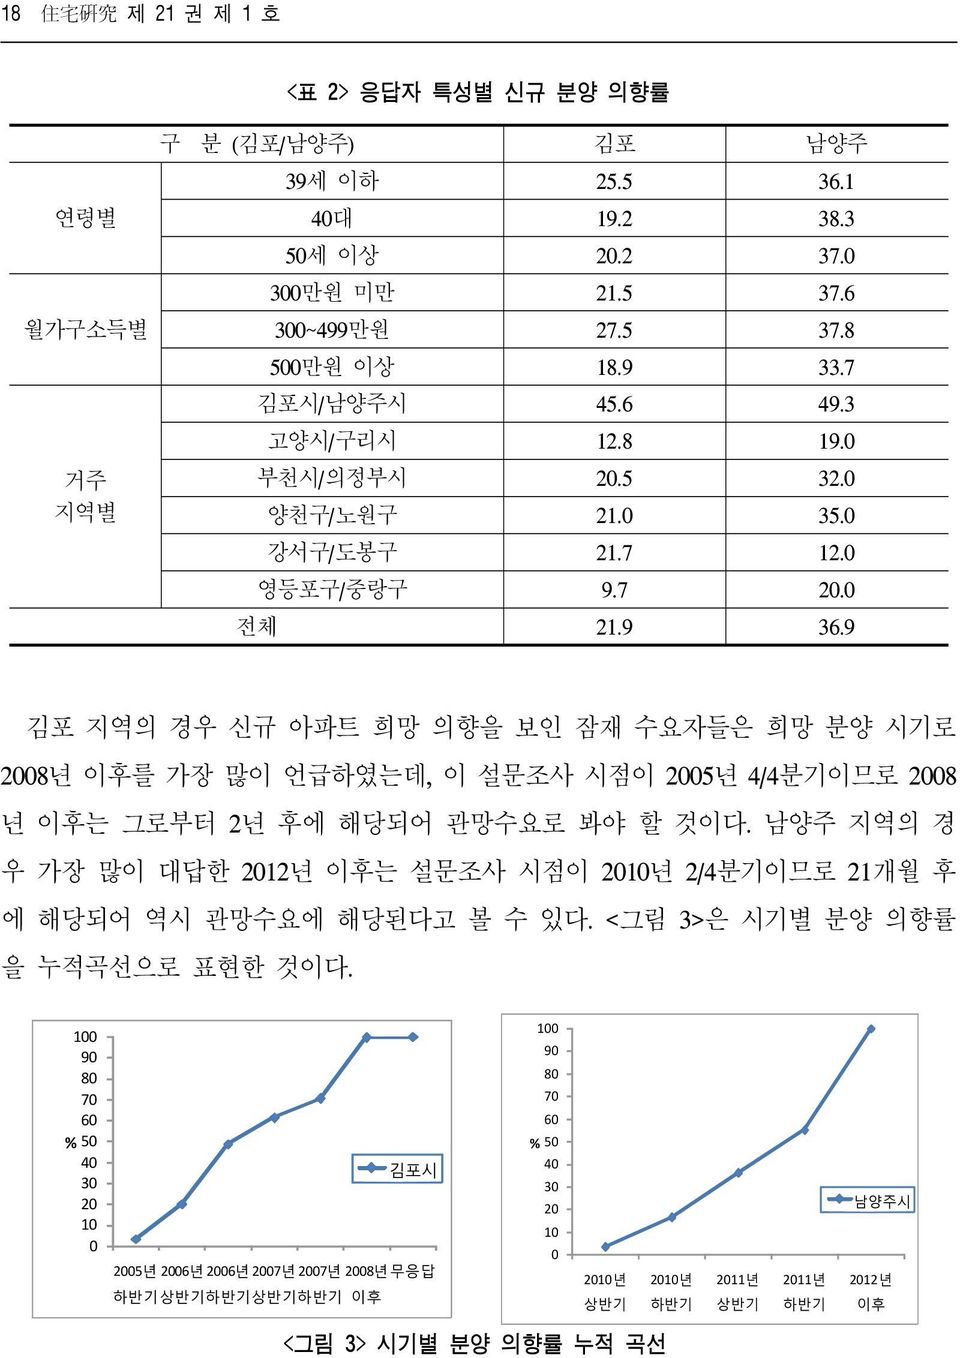 9 김포 지역의 경우 신규 아파트 희망 의향을 보인 잠재 수요자들은 희망 분양 시기로 2008년 이후를 가장 많이 언급하였는데, 이 설문조사 시점이 2005년 4/4분기이므로 2008 년 이후는 그로부터 2년 후에 해당되어 관망수요로 봐야 할 것이다.